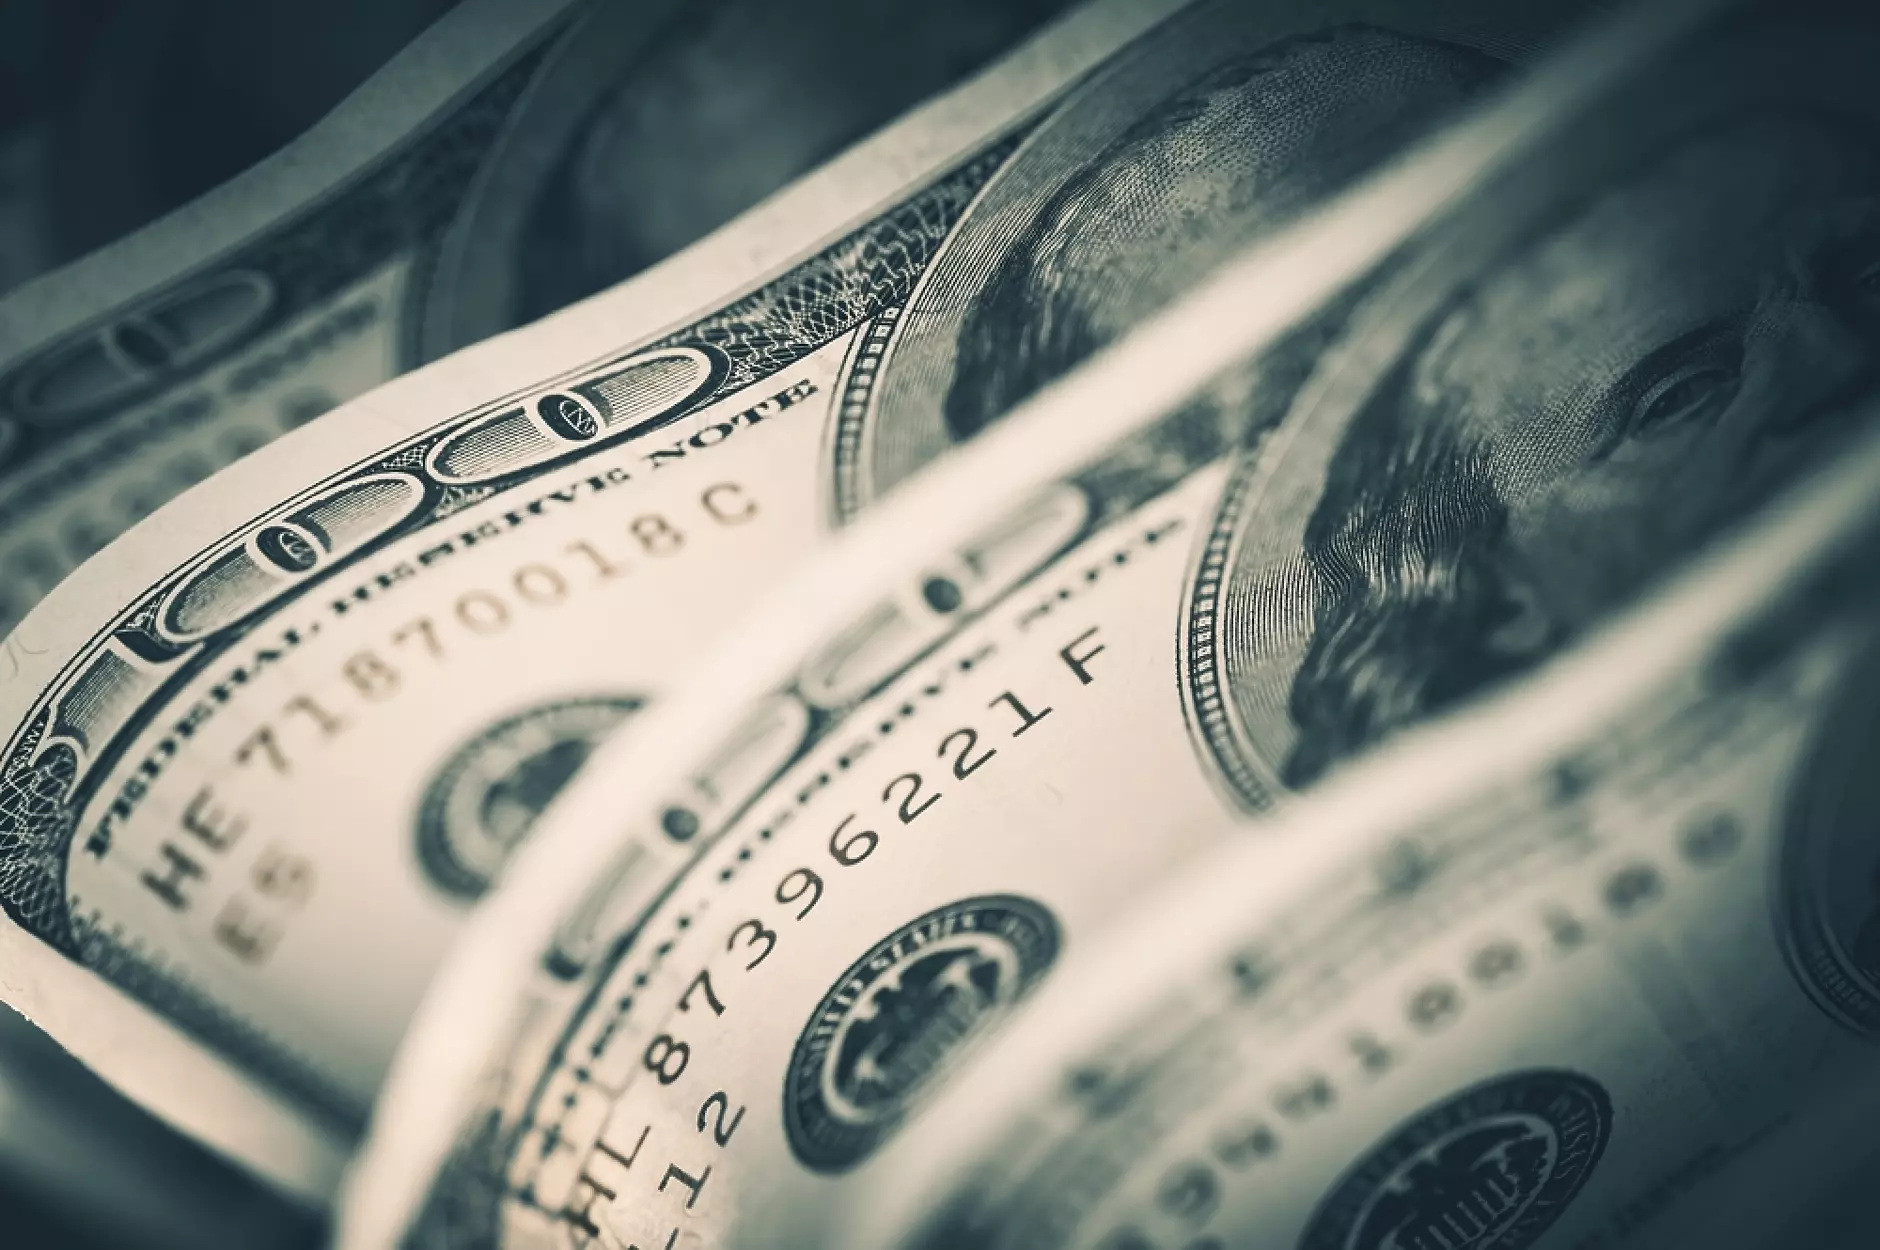 Щатският долар вероятно ще остане силен през 2023 г., въпреки страховете за икономиката